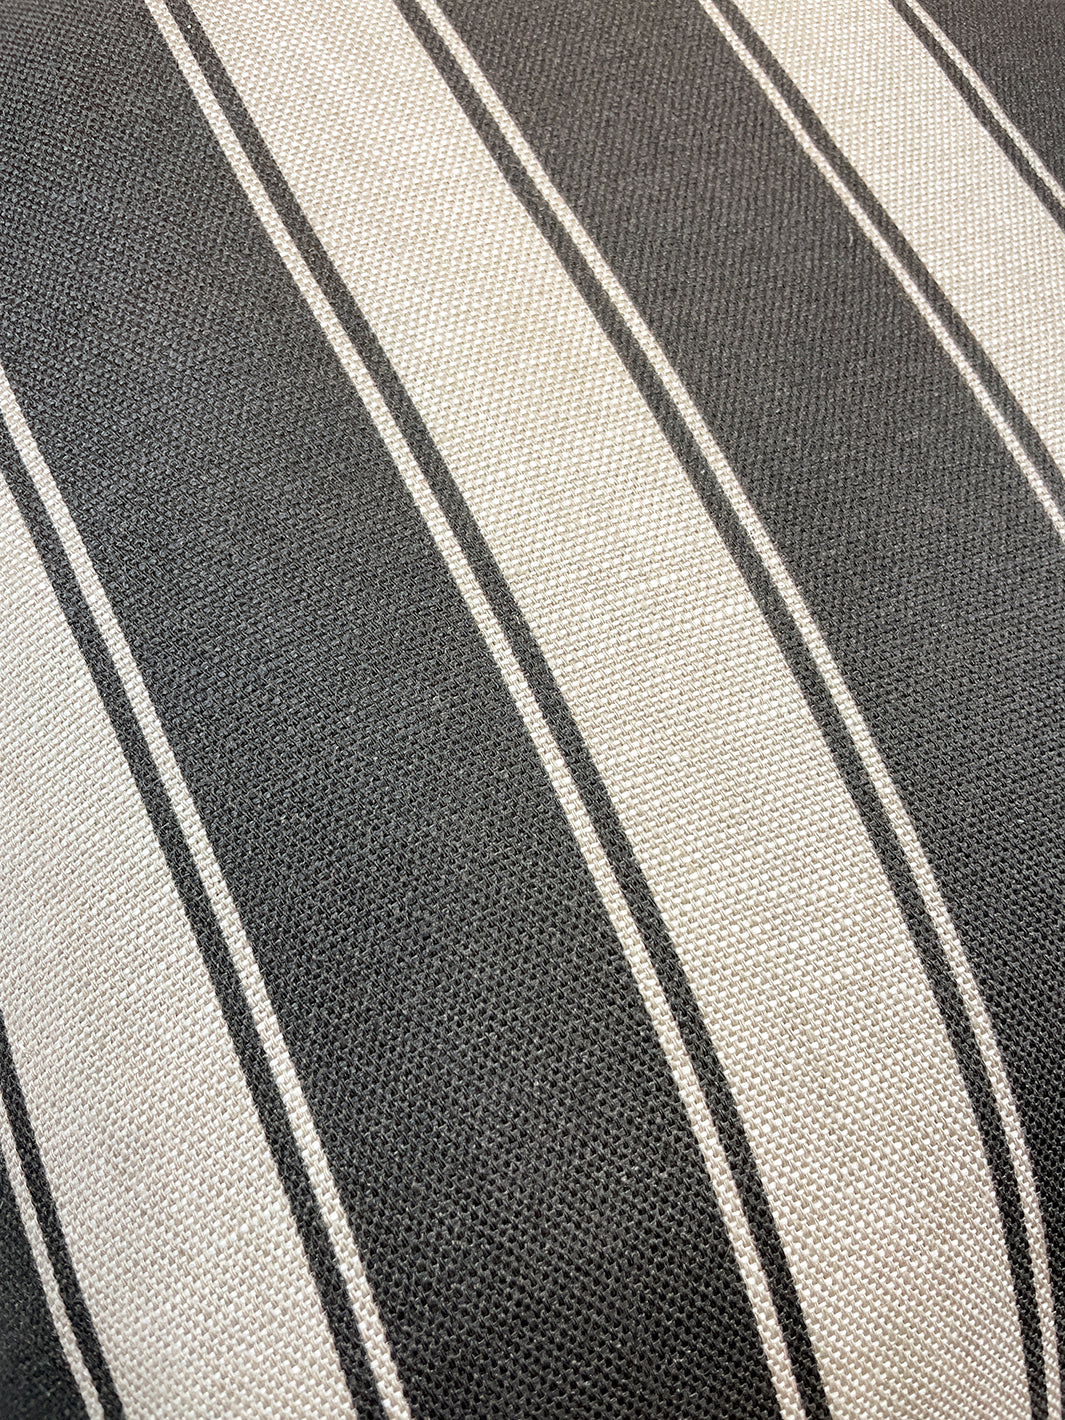 'Ojai Stripe' Throw Pillow - Black on Flax Linen